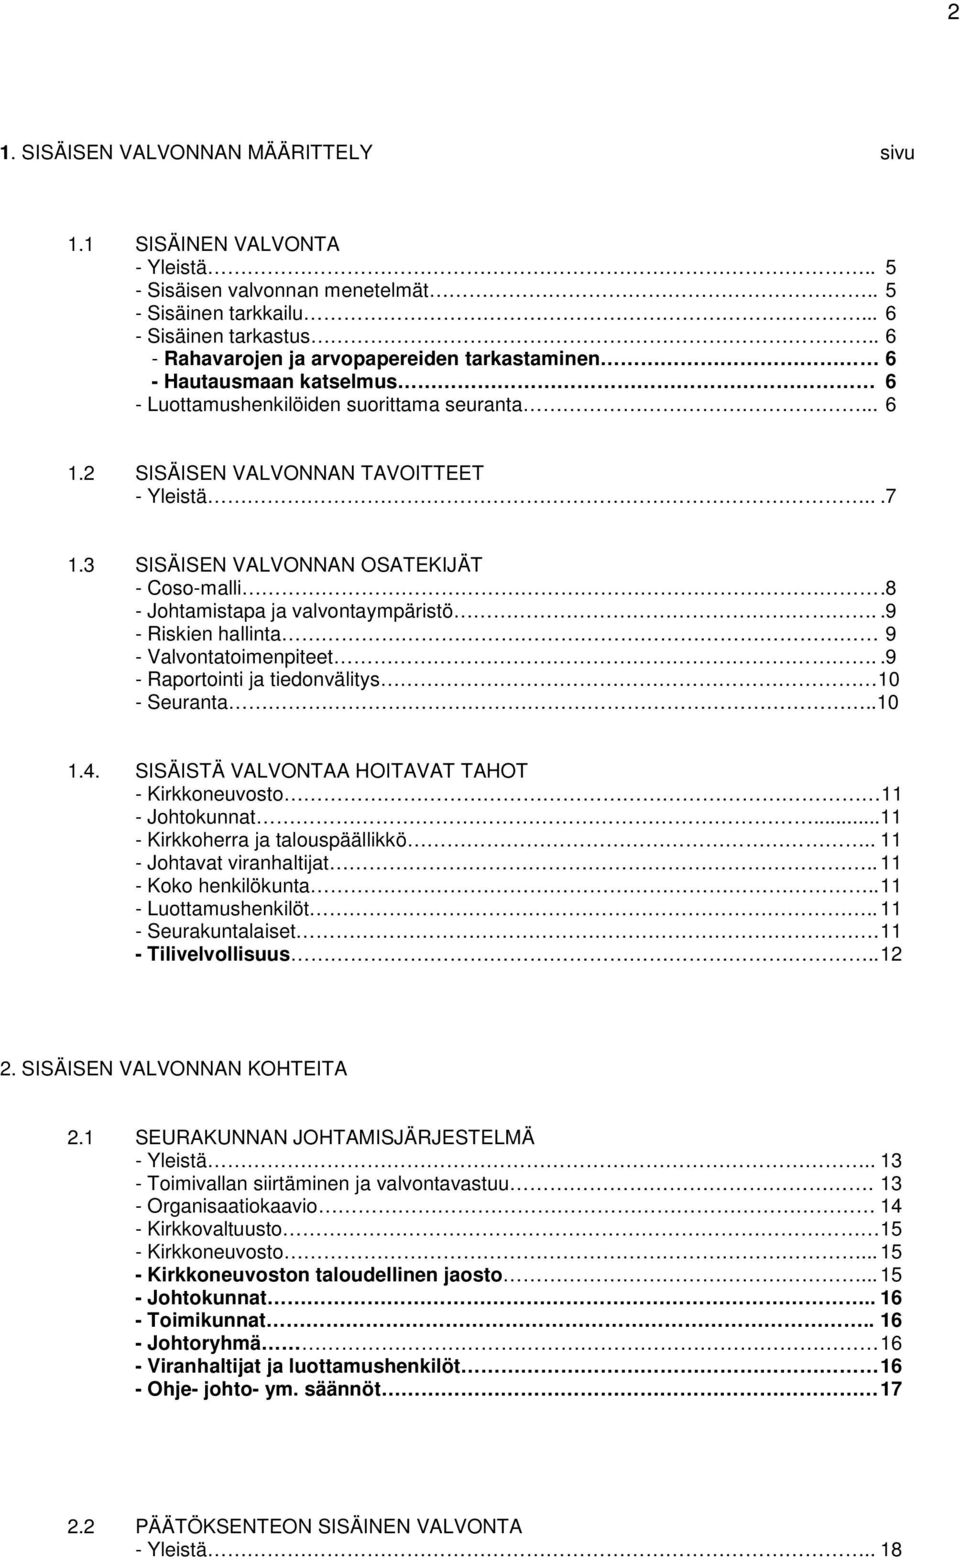 3 SISÄISEN VALVONNAN OSATEKIJÄT - Coso-malli.8 - Johtamistapa ja valvontaympäristö..9 - Riskien hallinta 9 - Valvontatoimenpiteet..9 - Raportointi ja tiedonvälitys 10 - Seuranta..10 1.4.